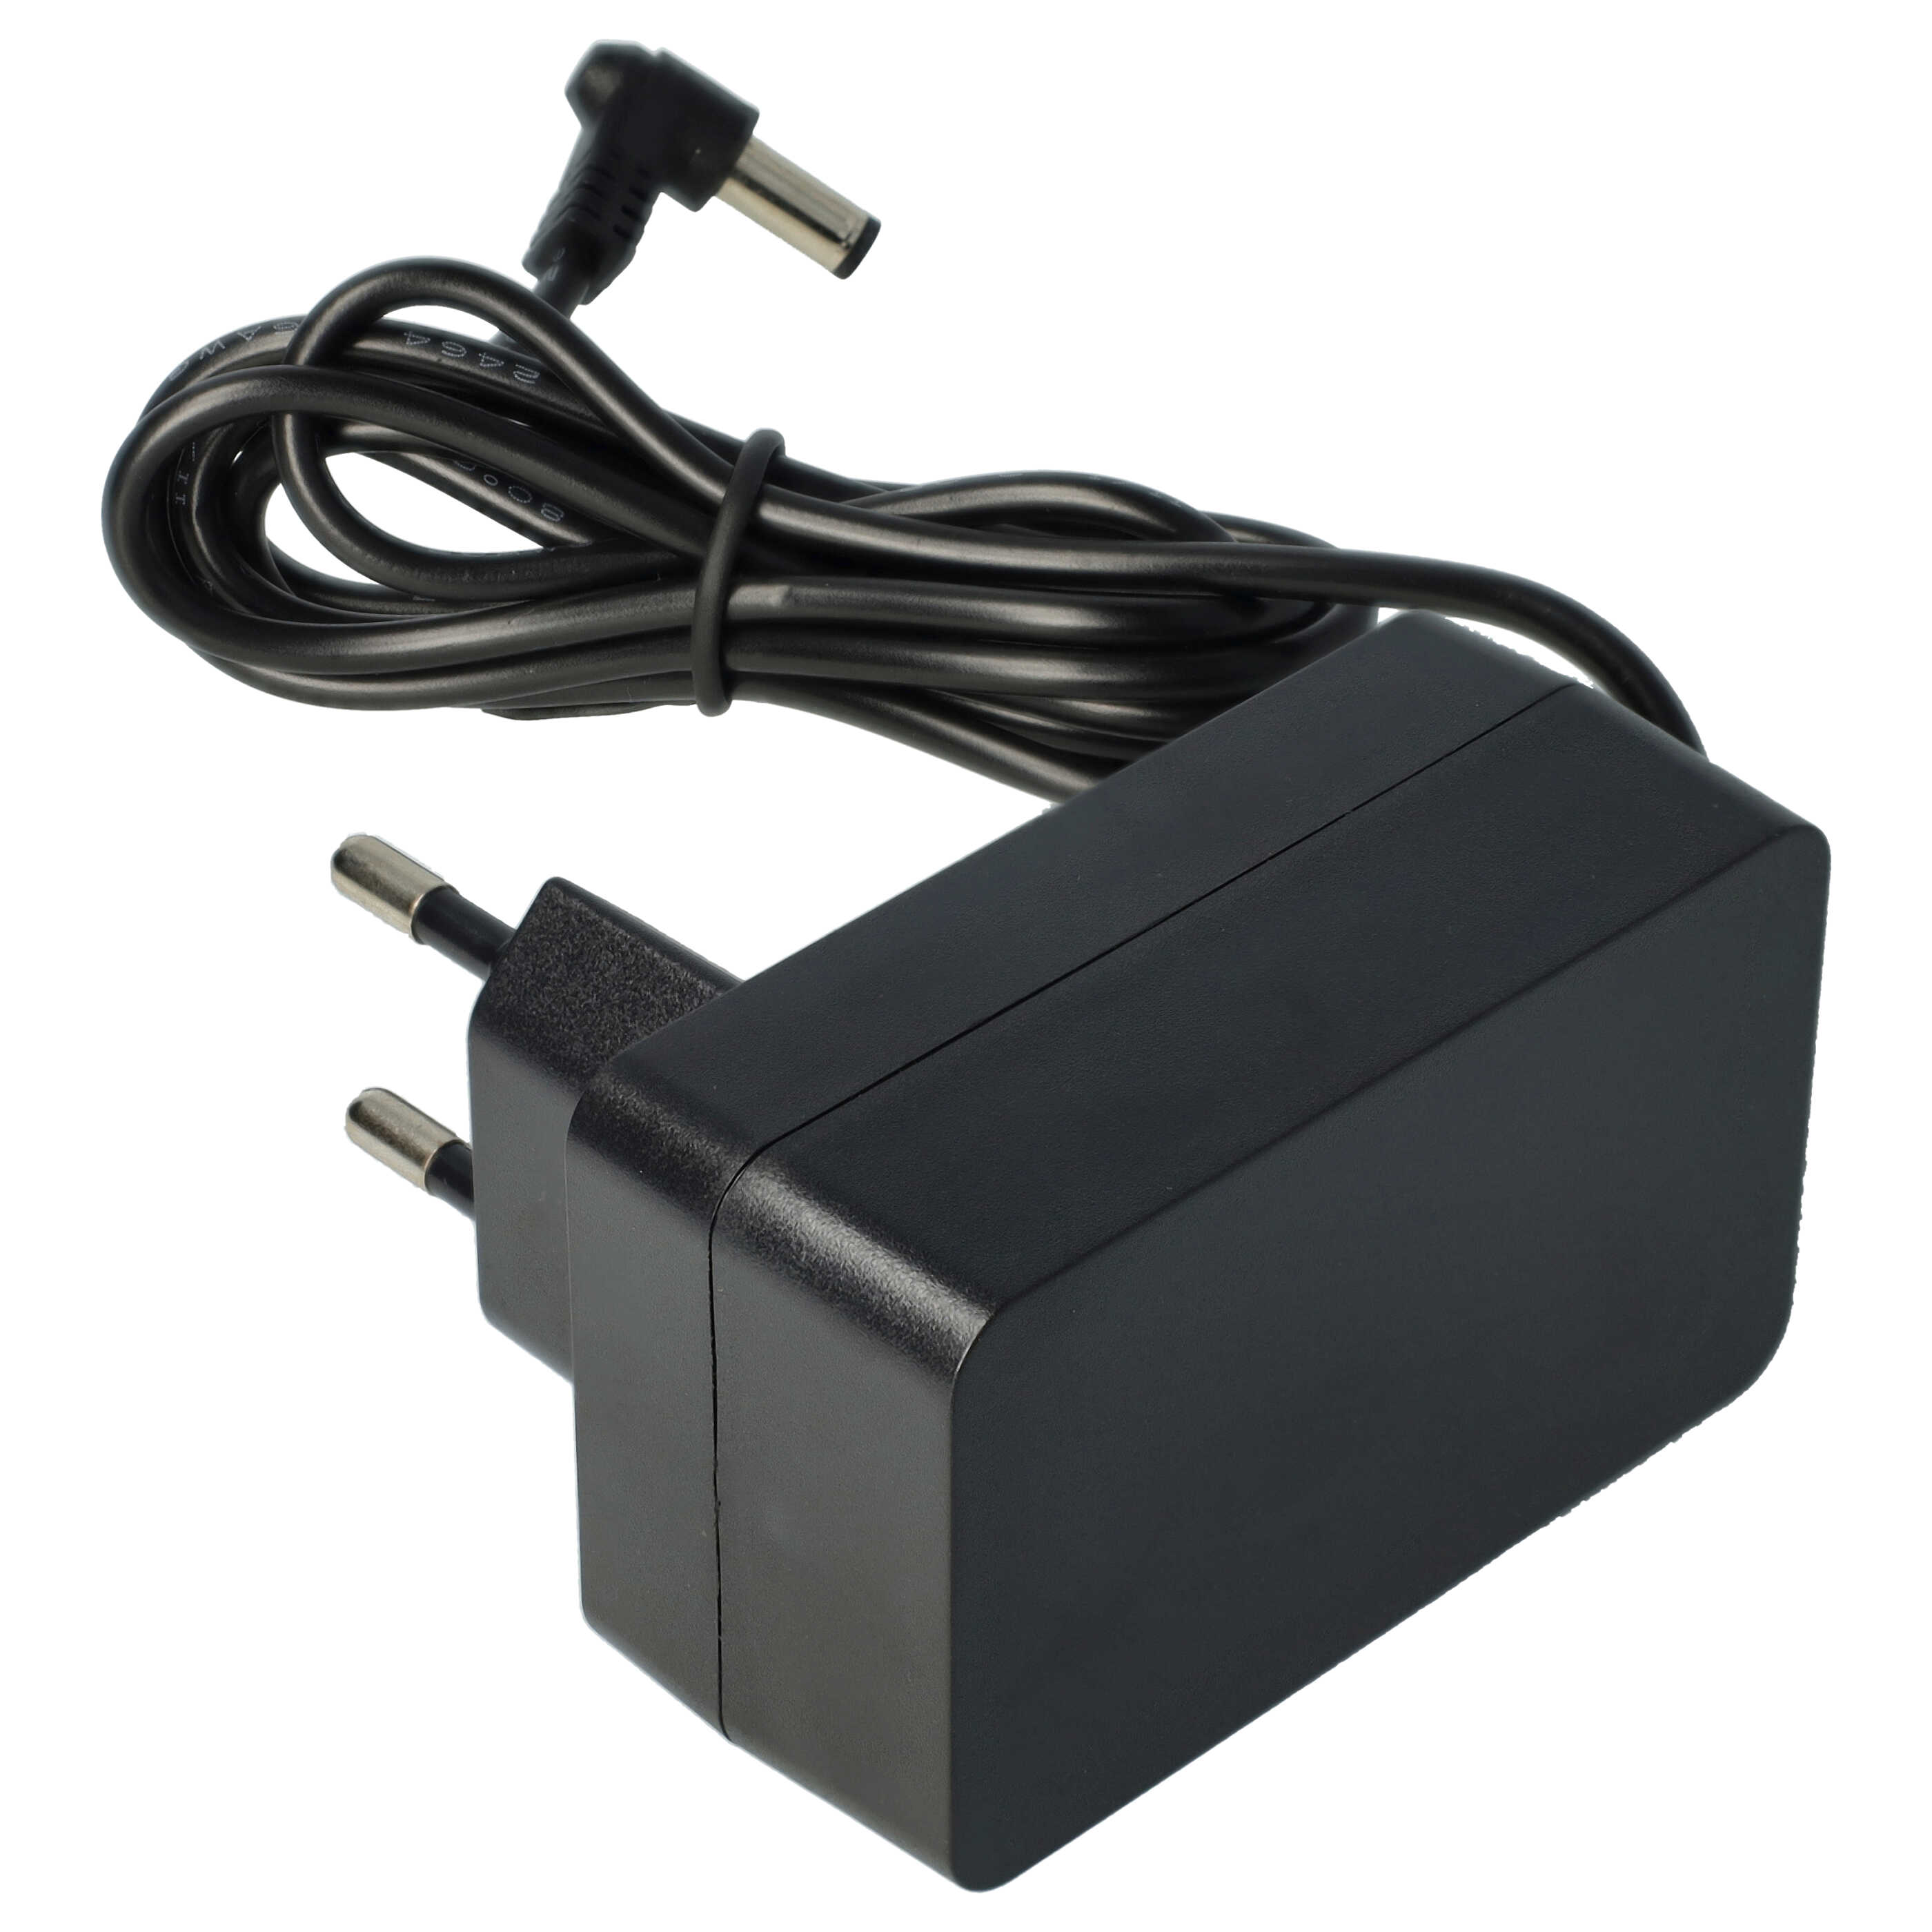 Chargeur remplace Tineco YLS0241A-E260080 pour aspirateur sans fil, à main Tineco